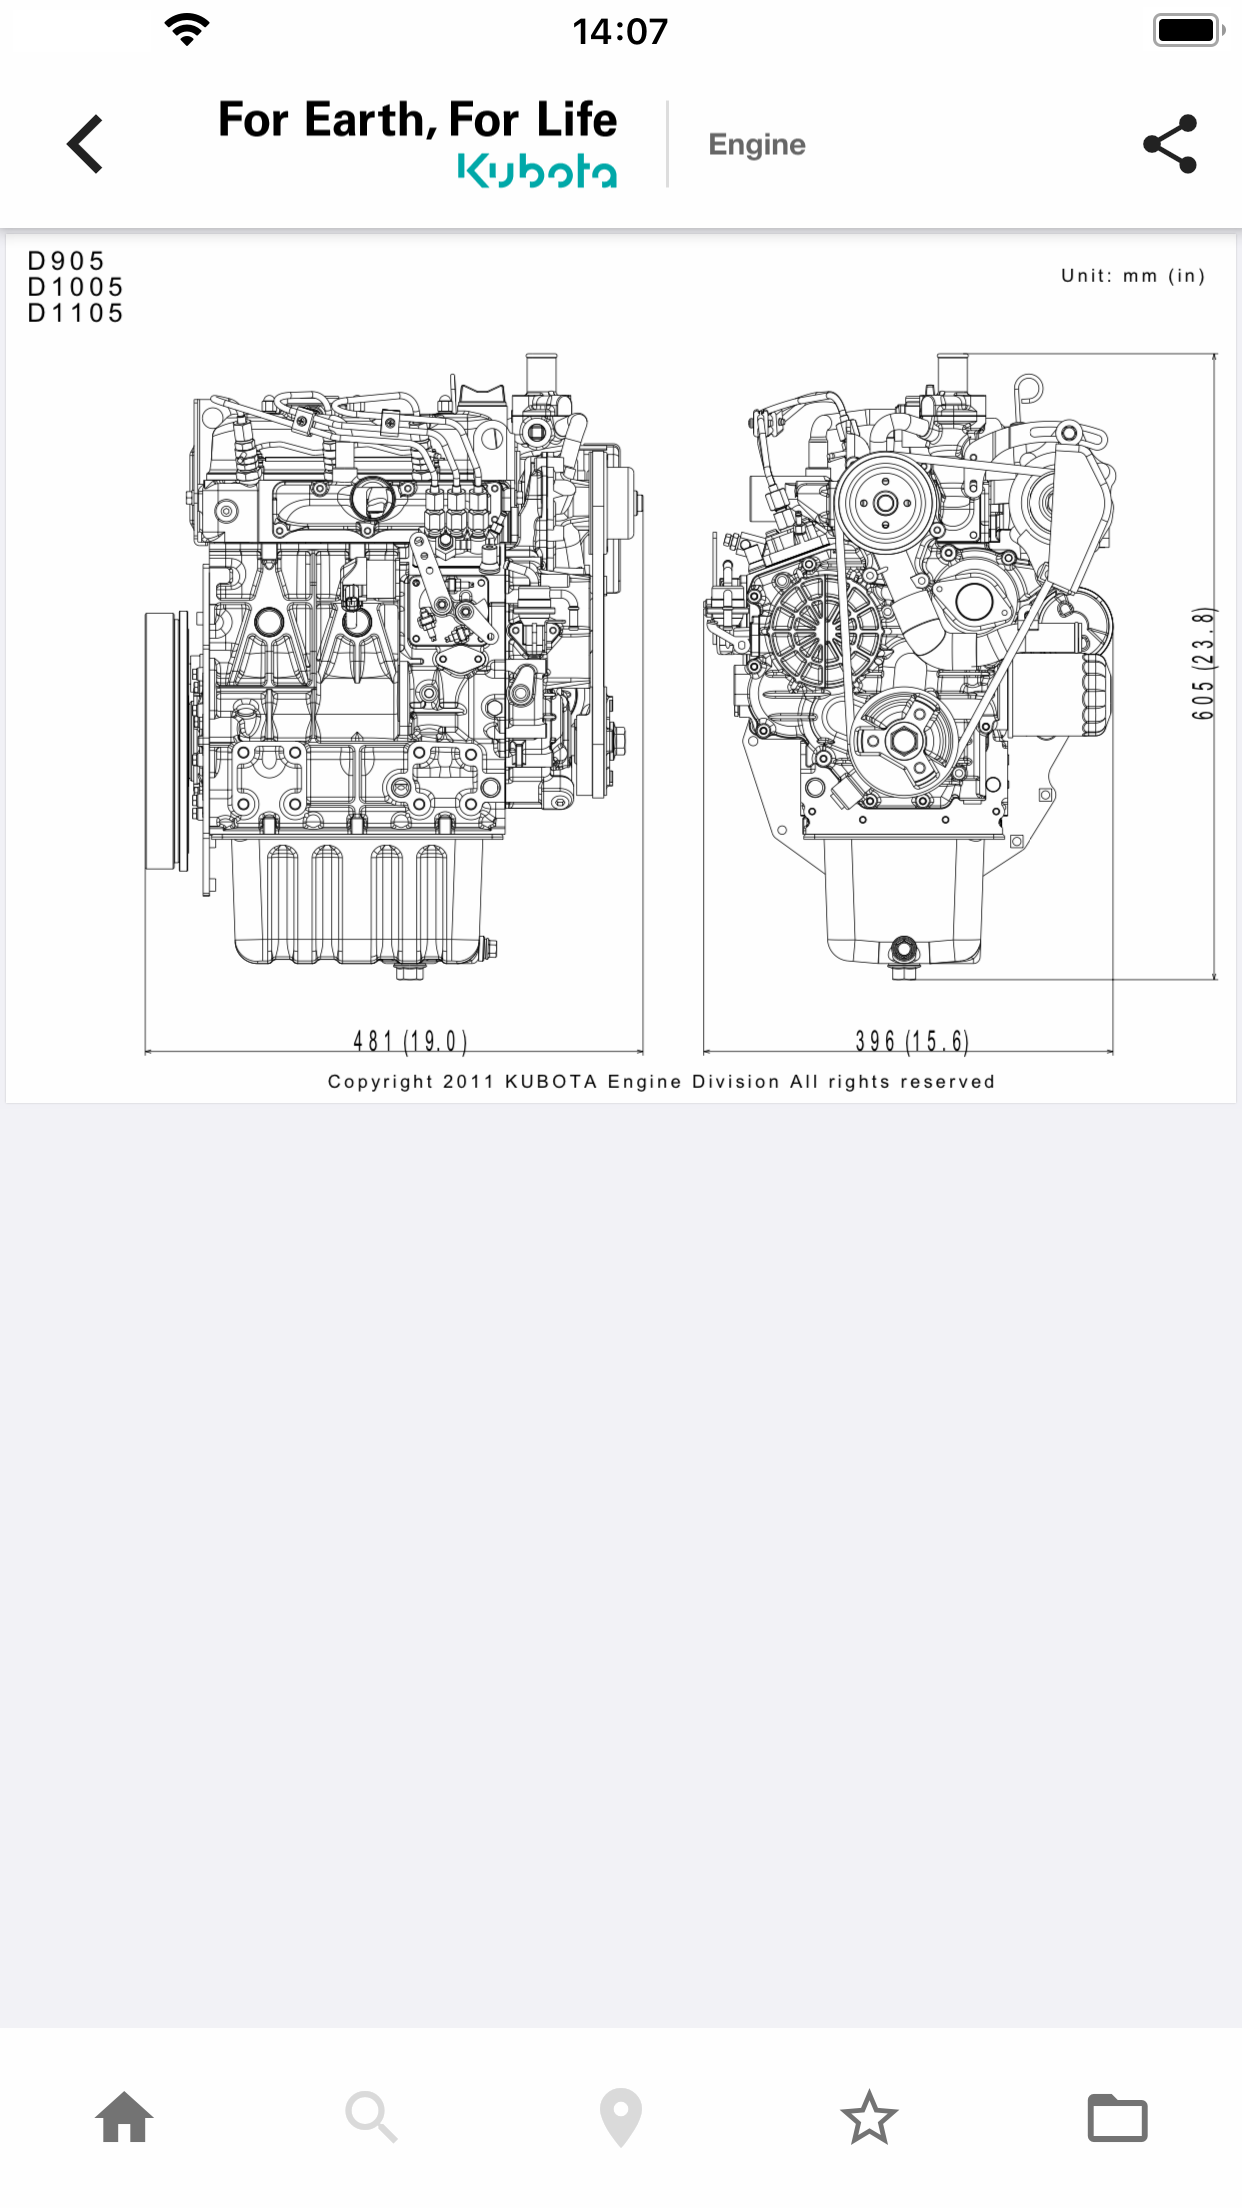 Kubota Engine Catalogue App イメージ画像3